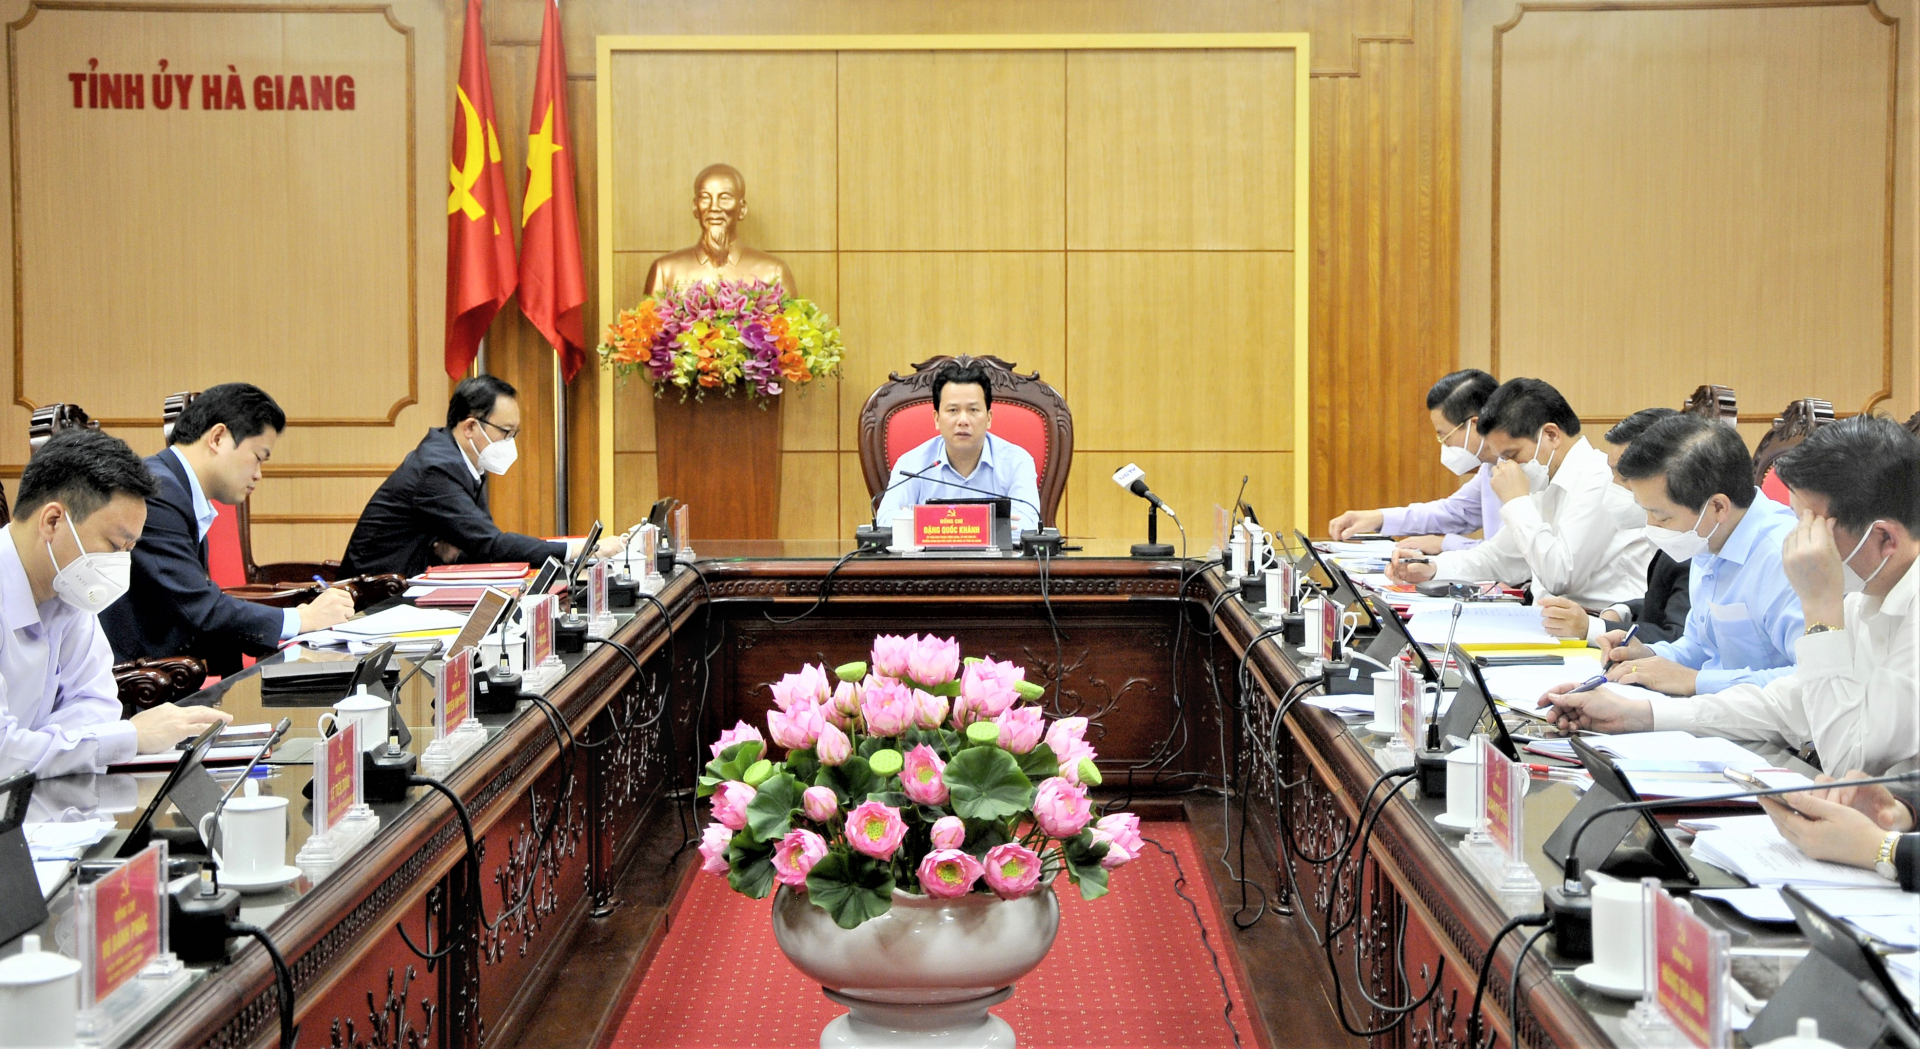 Toàn cảnh phiên họp BTV Tỉnh ủy tháng 3.2022.